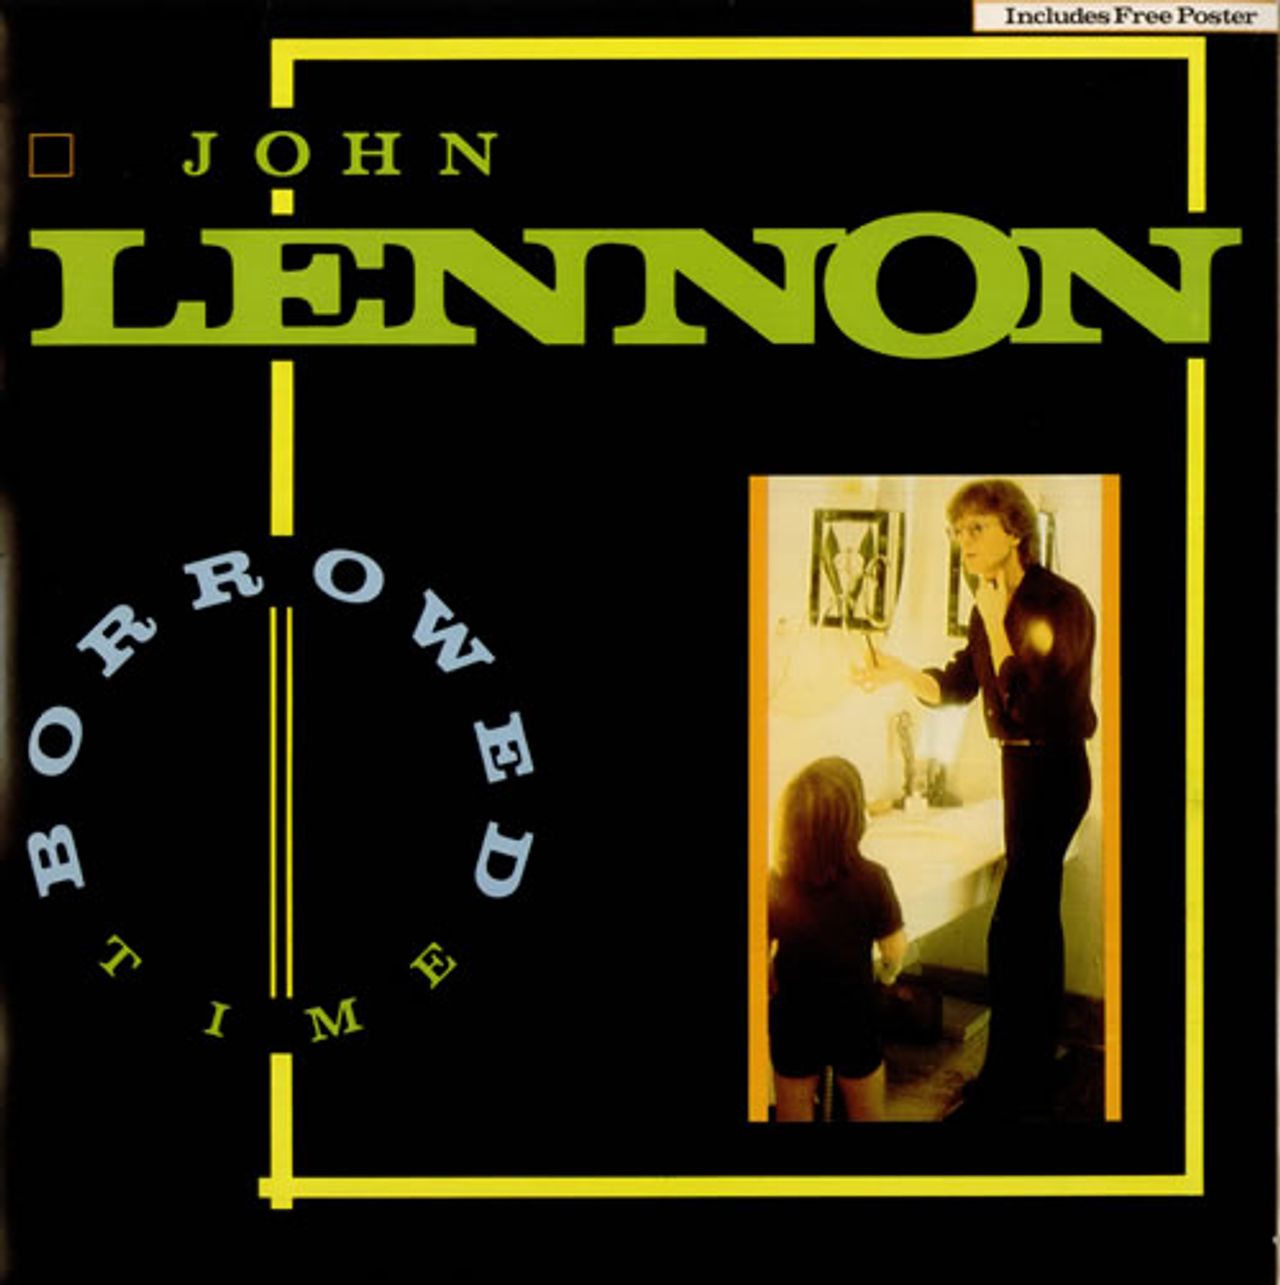 Lennon Borrowed Time + Poster UK 12" vinyl — RareVinyl.com